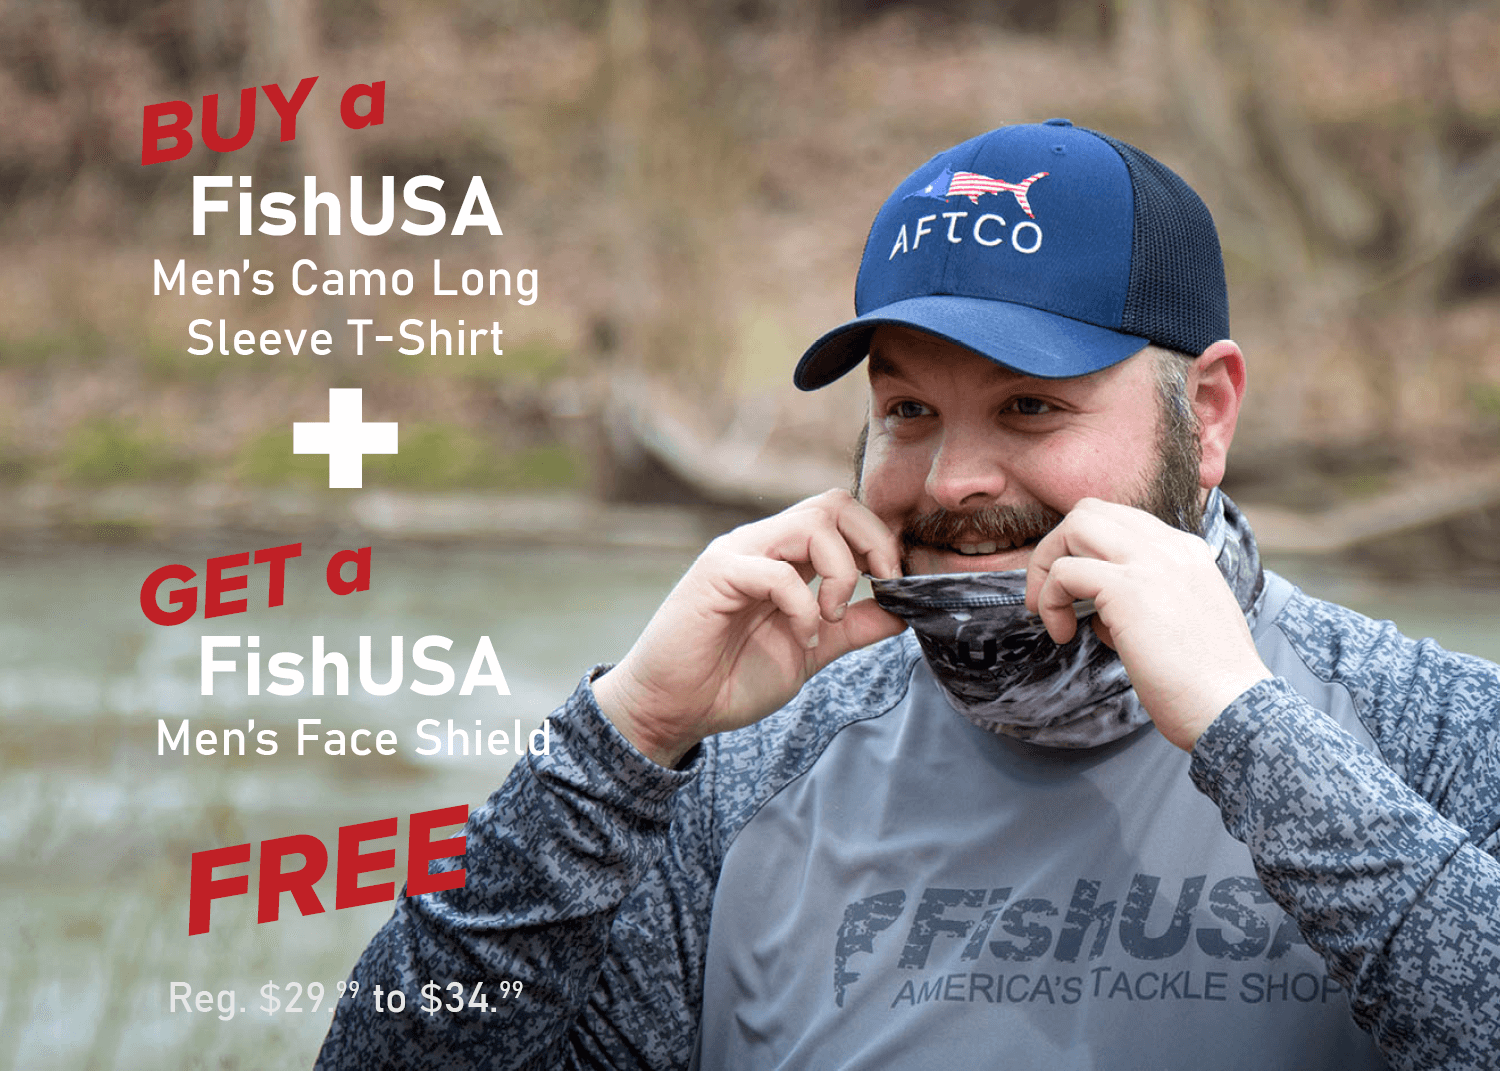 Buy a FishUSA Men's Camo Long Sleeve T-Shirt & Get a FREE FishUSA Men's Face Shield!